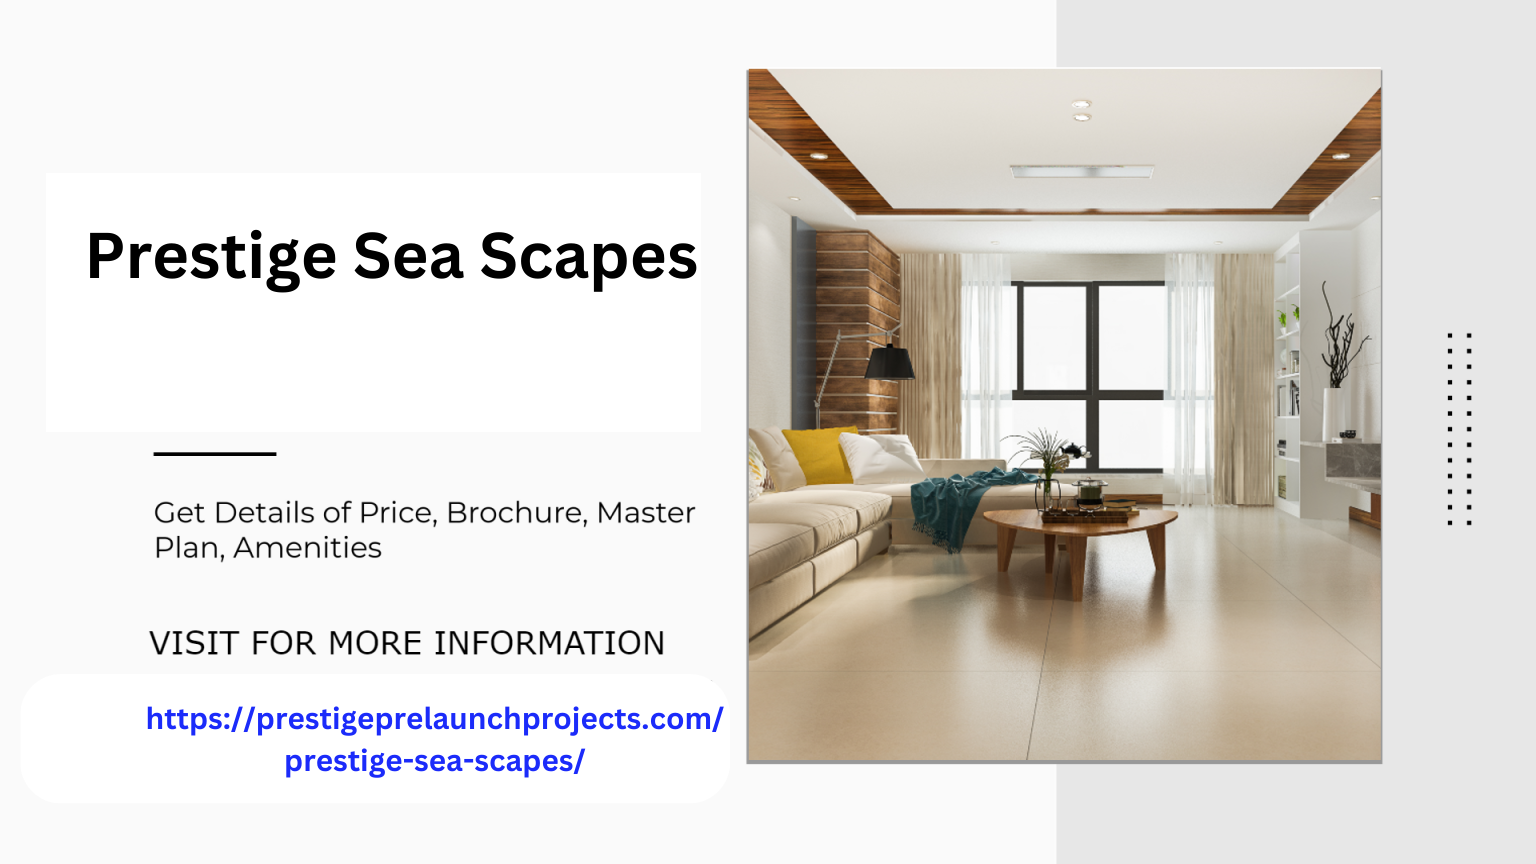 Prestige Sea Scapes